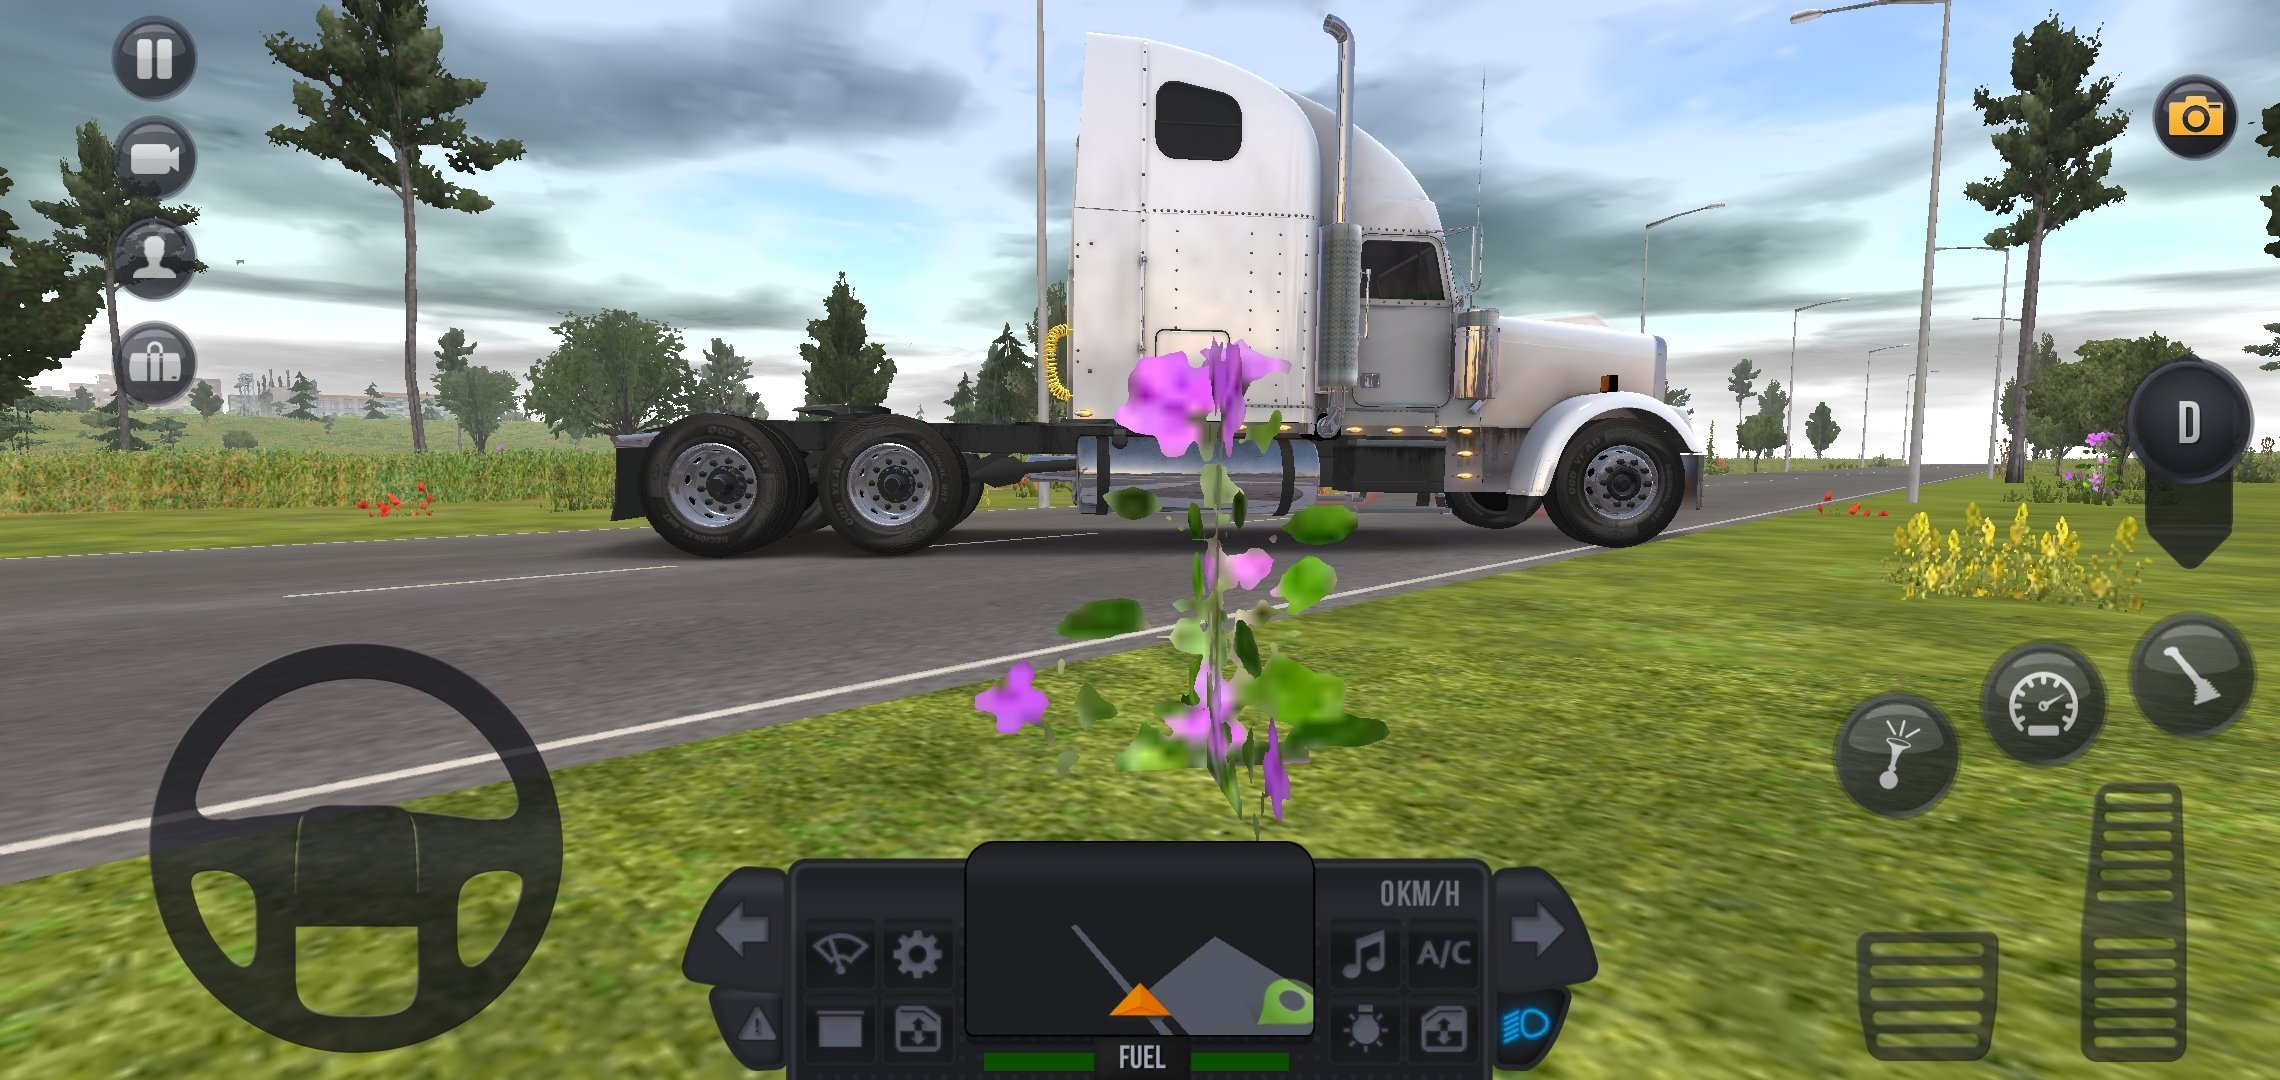 Baixe Truck Simulator : Ultimate no PC